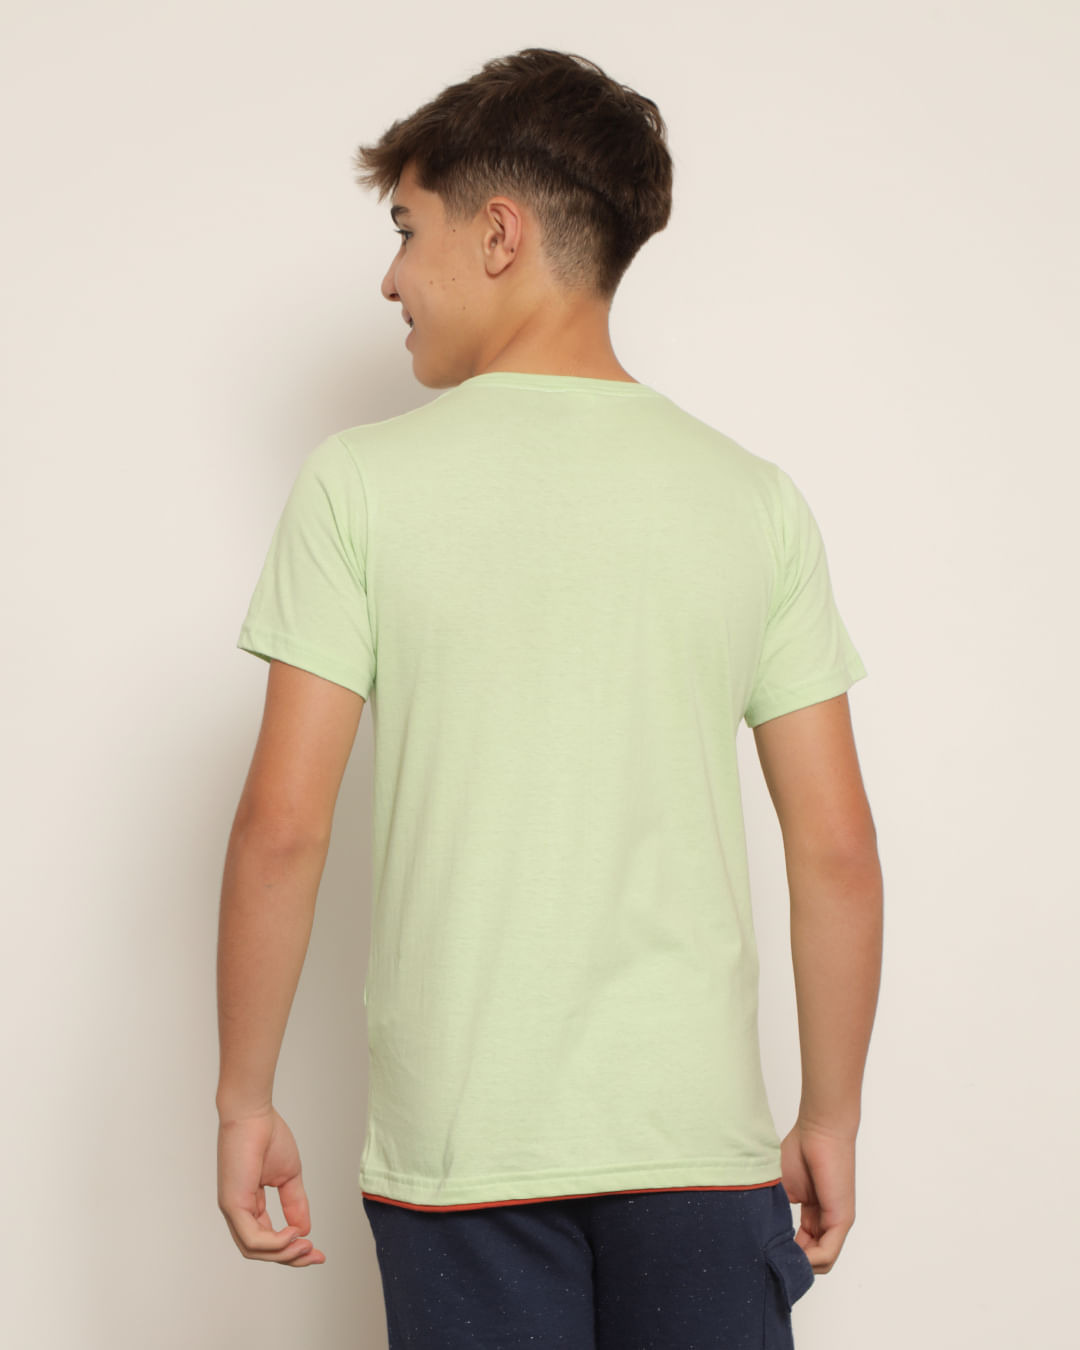 Camiseta-T38500-Mc-M-1016-California---Verde-Claro